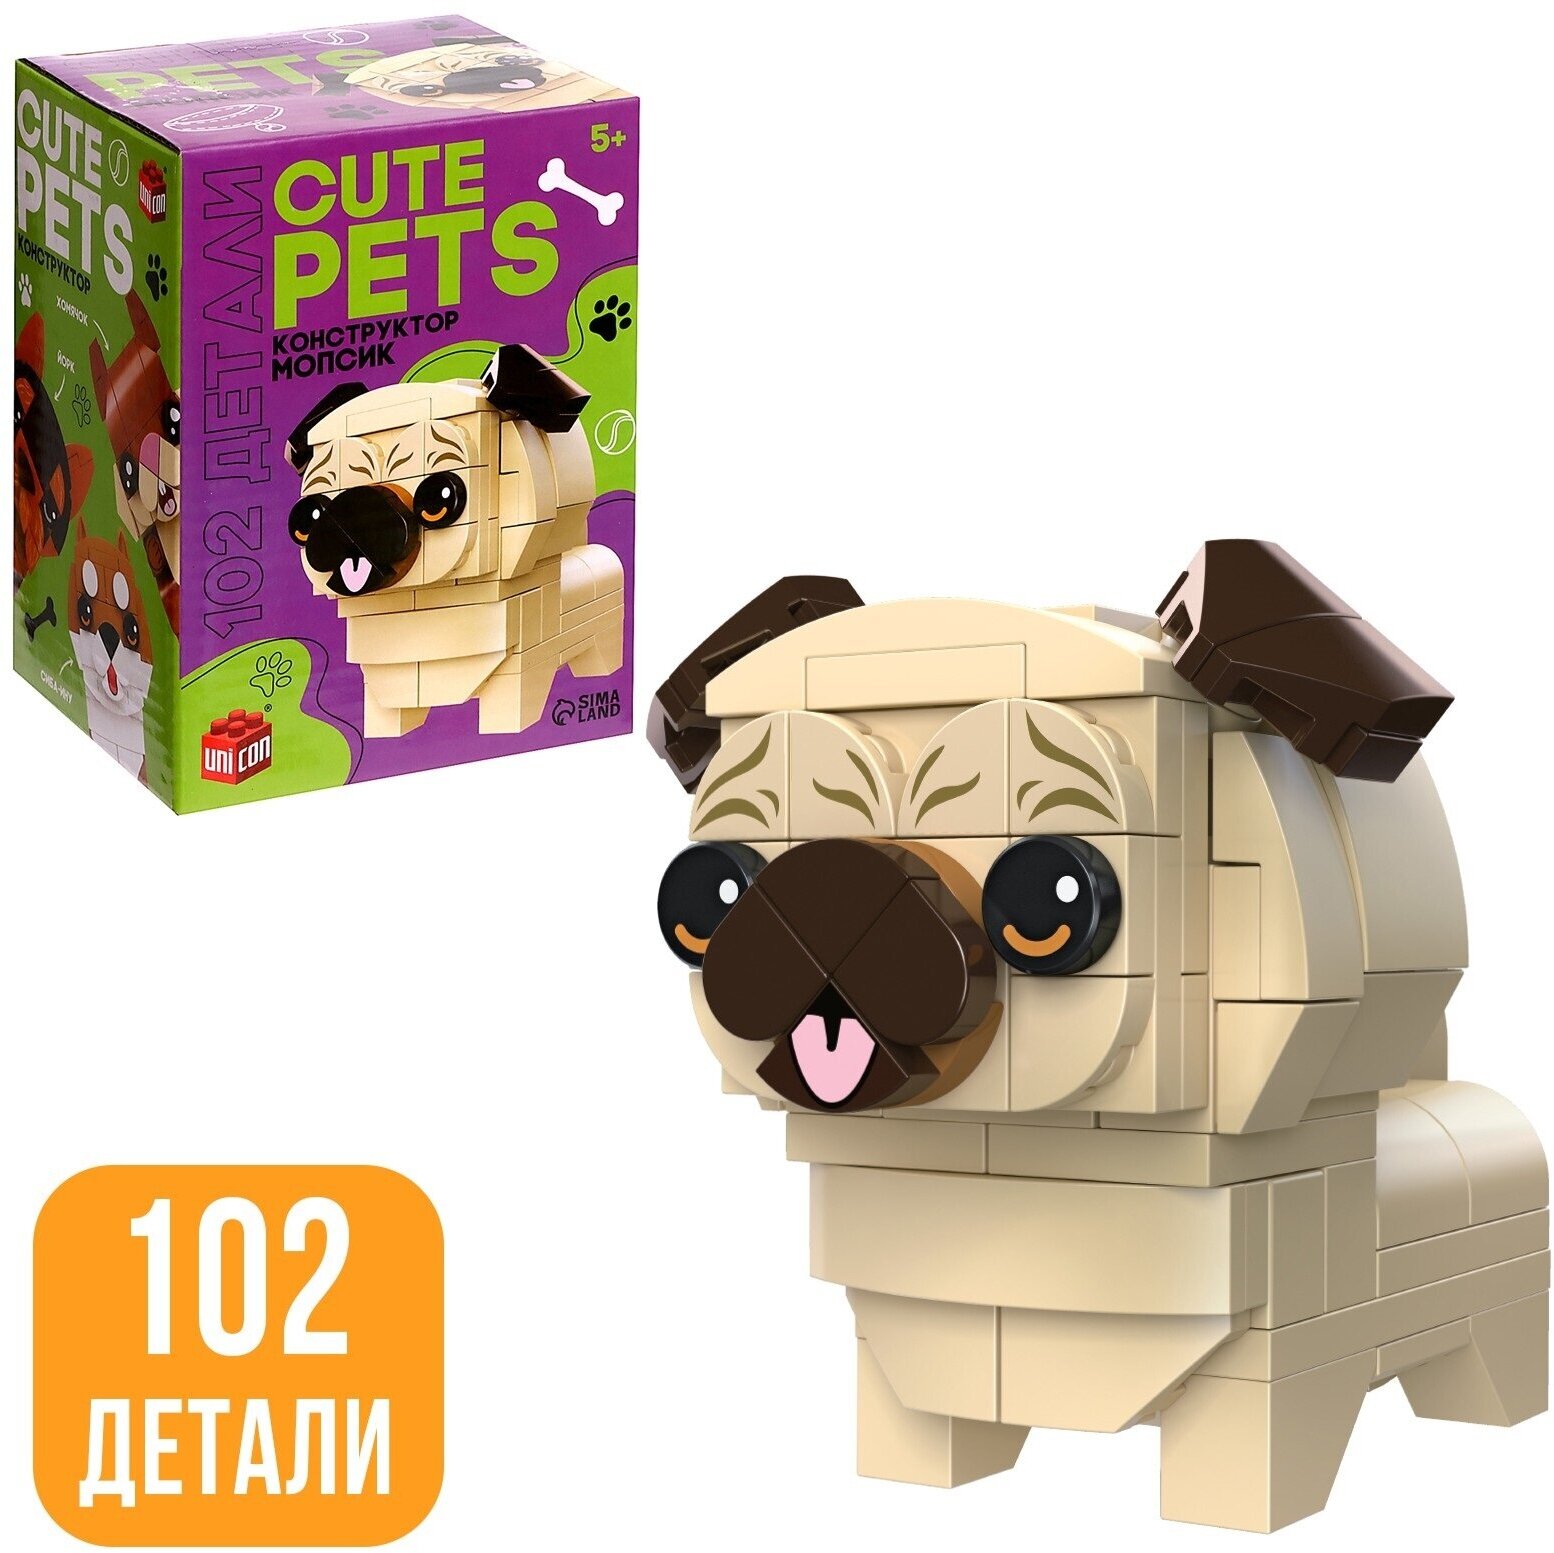 Детский блочный конструктор UNICON "Cute pets", Мопсик, 102 детали